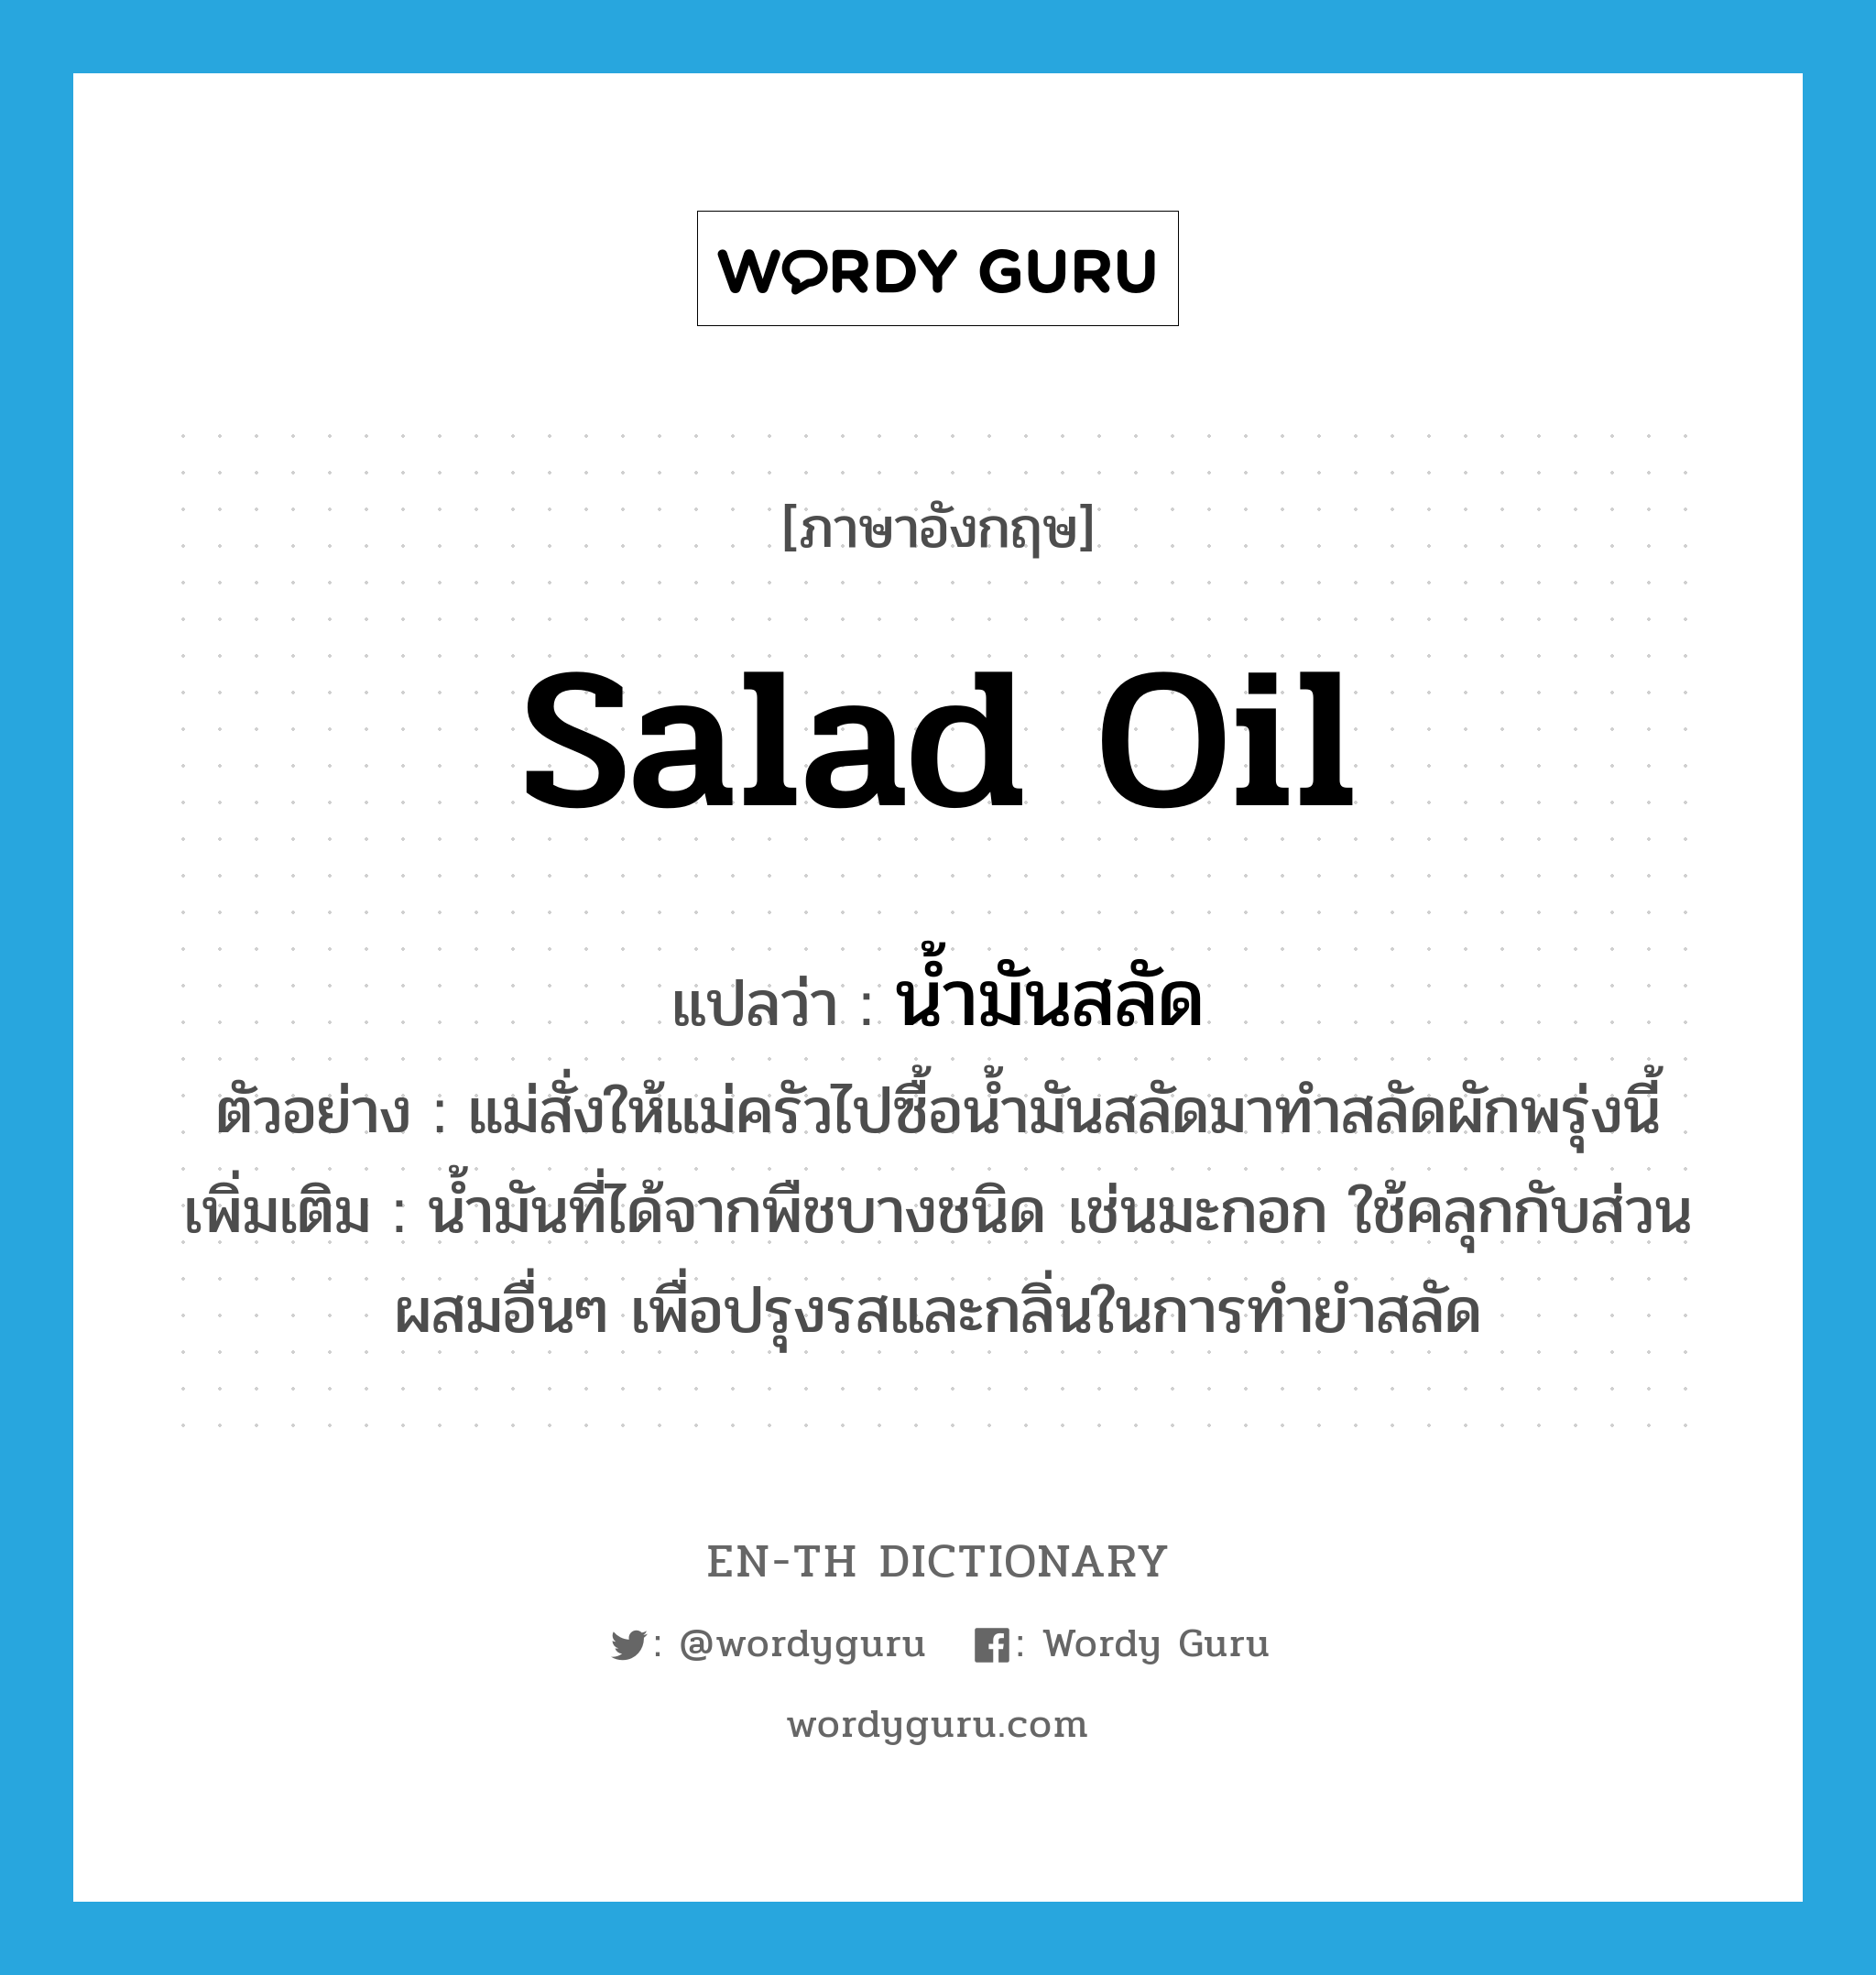 salad oil แปลว่า?, คำศัพท์ภาษาอังกฤษ salad oil แปลว่า น้ำมันสลัด ประเภท N ตัวอย่าง แม่สั่งให้แม่ครัวไปซื้อน้ำมันสลัดมาทำสลัดผักพรุ่งนี้ เพิ่มเติม น้ำมันที่ได้จากพืชบางชนิด เช่นมะกอก ใช้คลุกกับส่วนผสมอื่นๆ เพื่อปรุงรสและกลิ่นในการทำยำสลัด หมวด N